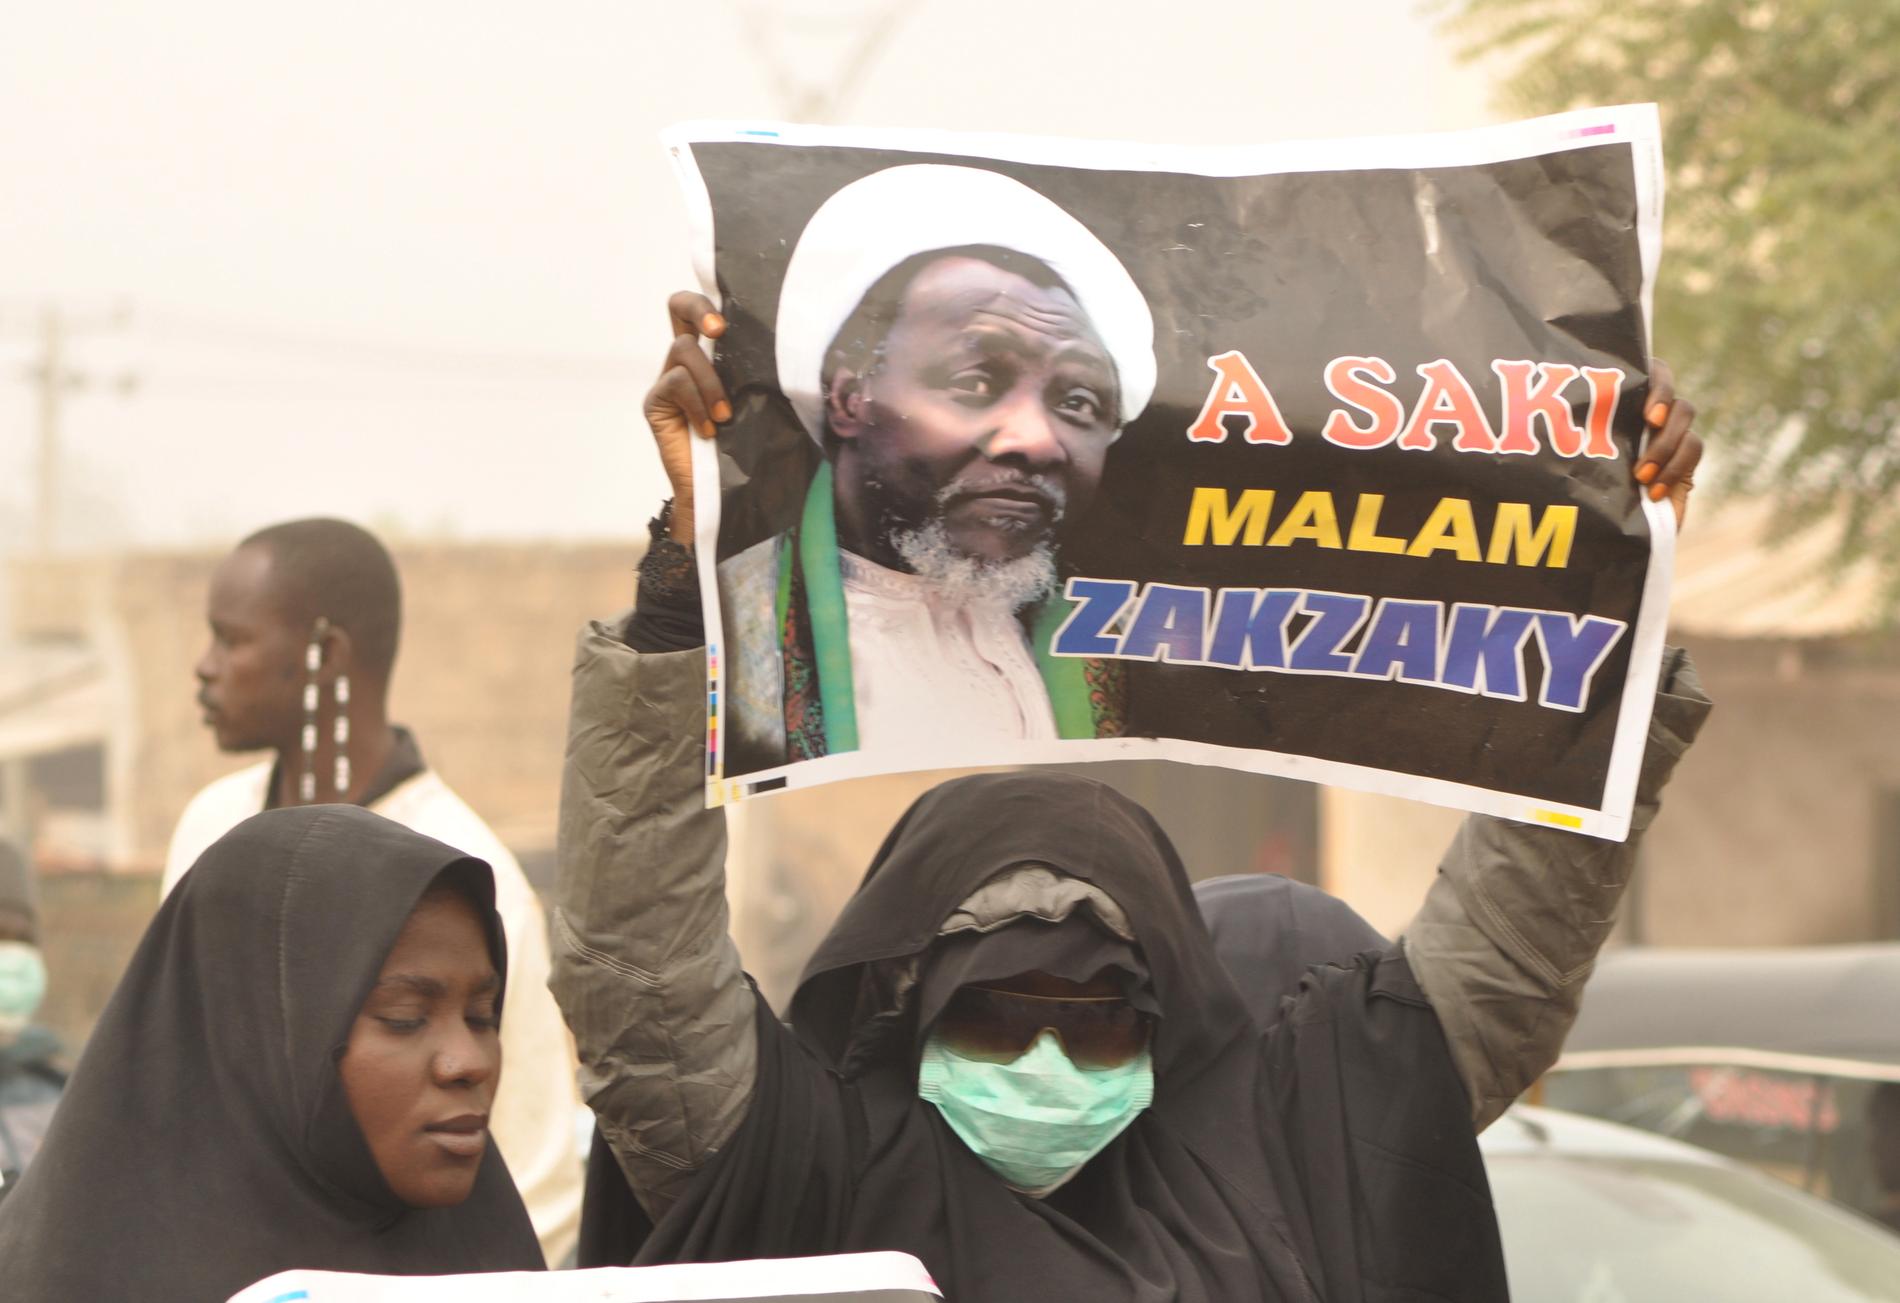 IMN-anhängare protesterar mot att dess ledare Ibrahim Zakzaky hålls fänglslad. Bilden är från staden Kano i december 2015 i samband med att Zakzaky frihetsberövades.